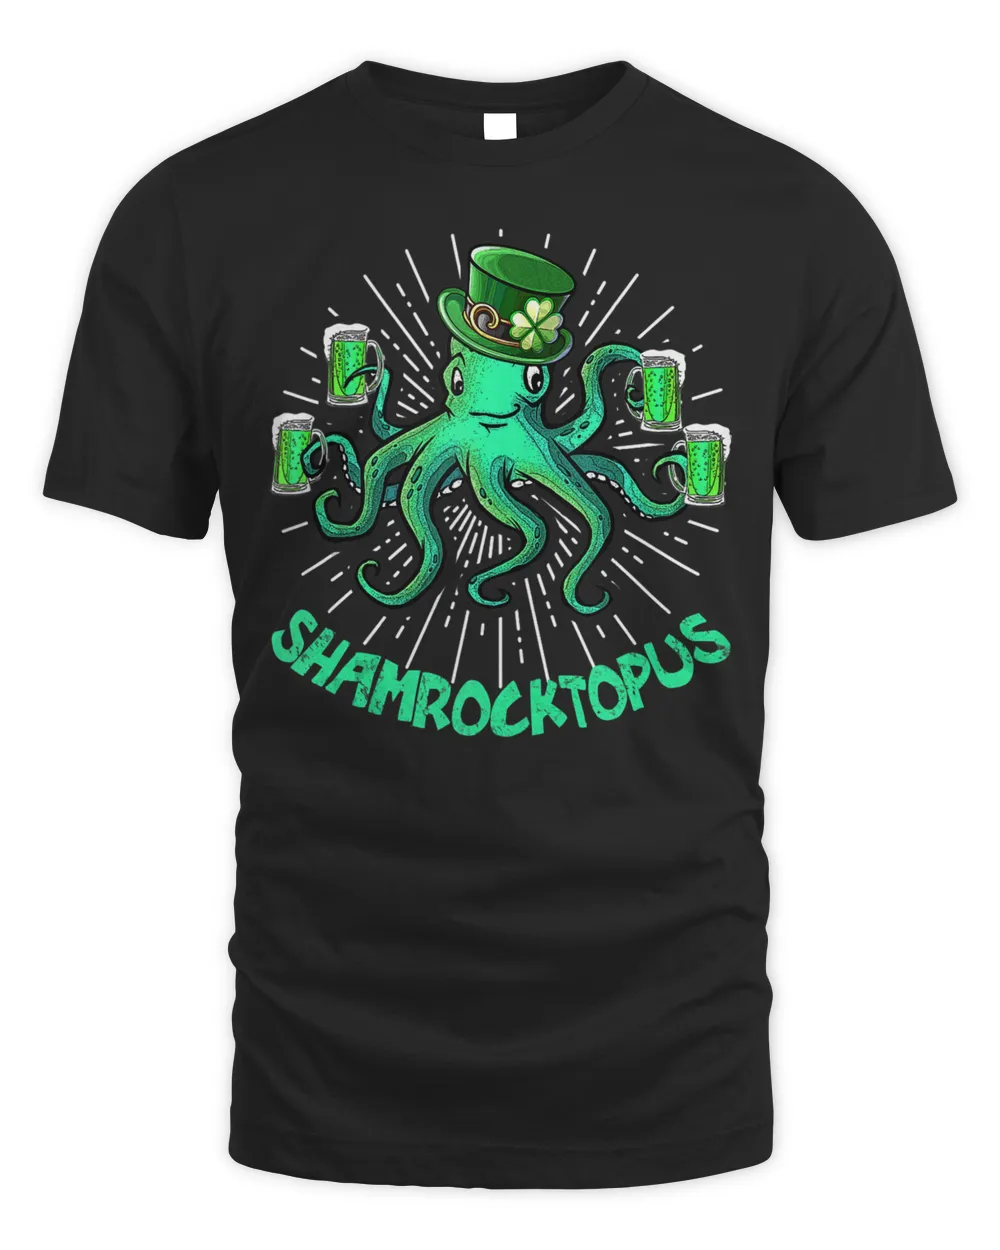 Shamrocktopus Leprechaun Tee St.Patrick's Day Irish Octopus Tank Top